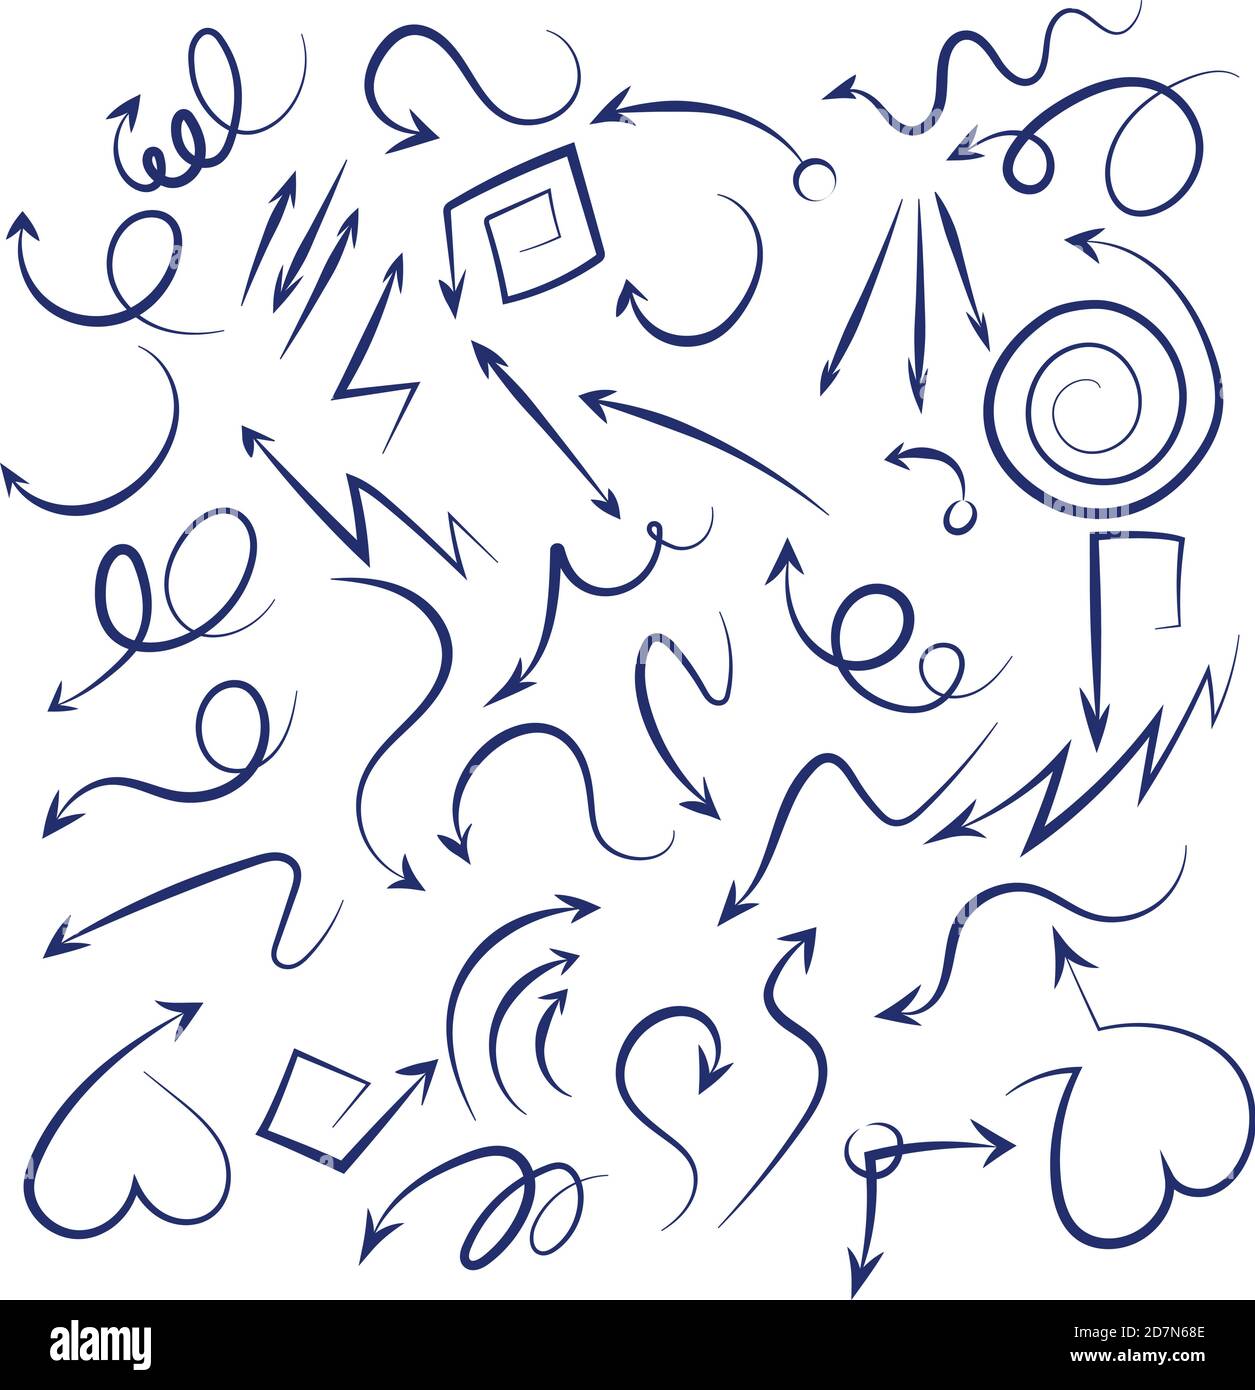 Doodle-Pfeile gesetzt. Skizze wirbelnde Pfeile schwarz Hand gezeichnet gekrümmten Zeiger Symbole auf weißem Hintergrund isoliert. Pfeil-Drall-Zeiger, Kurvenlinie skizzierende Illustration Stock Vektor